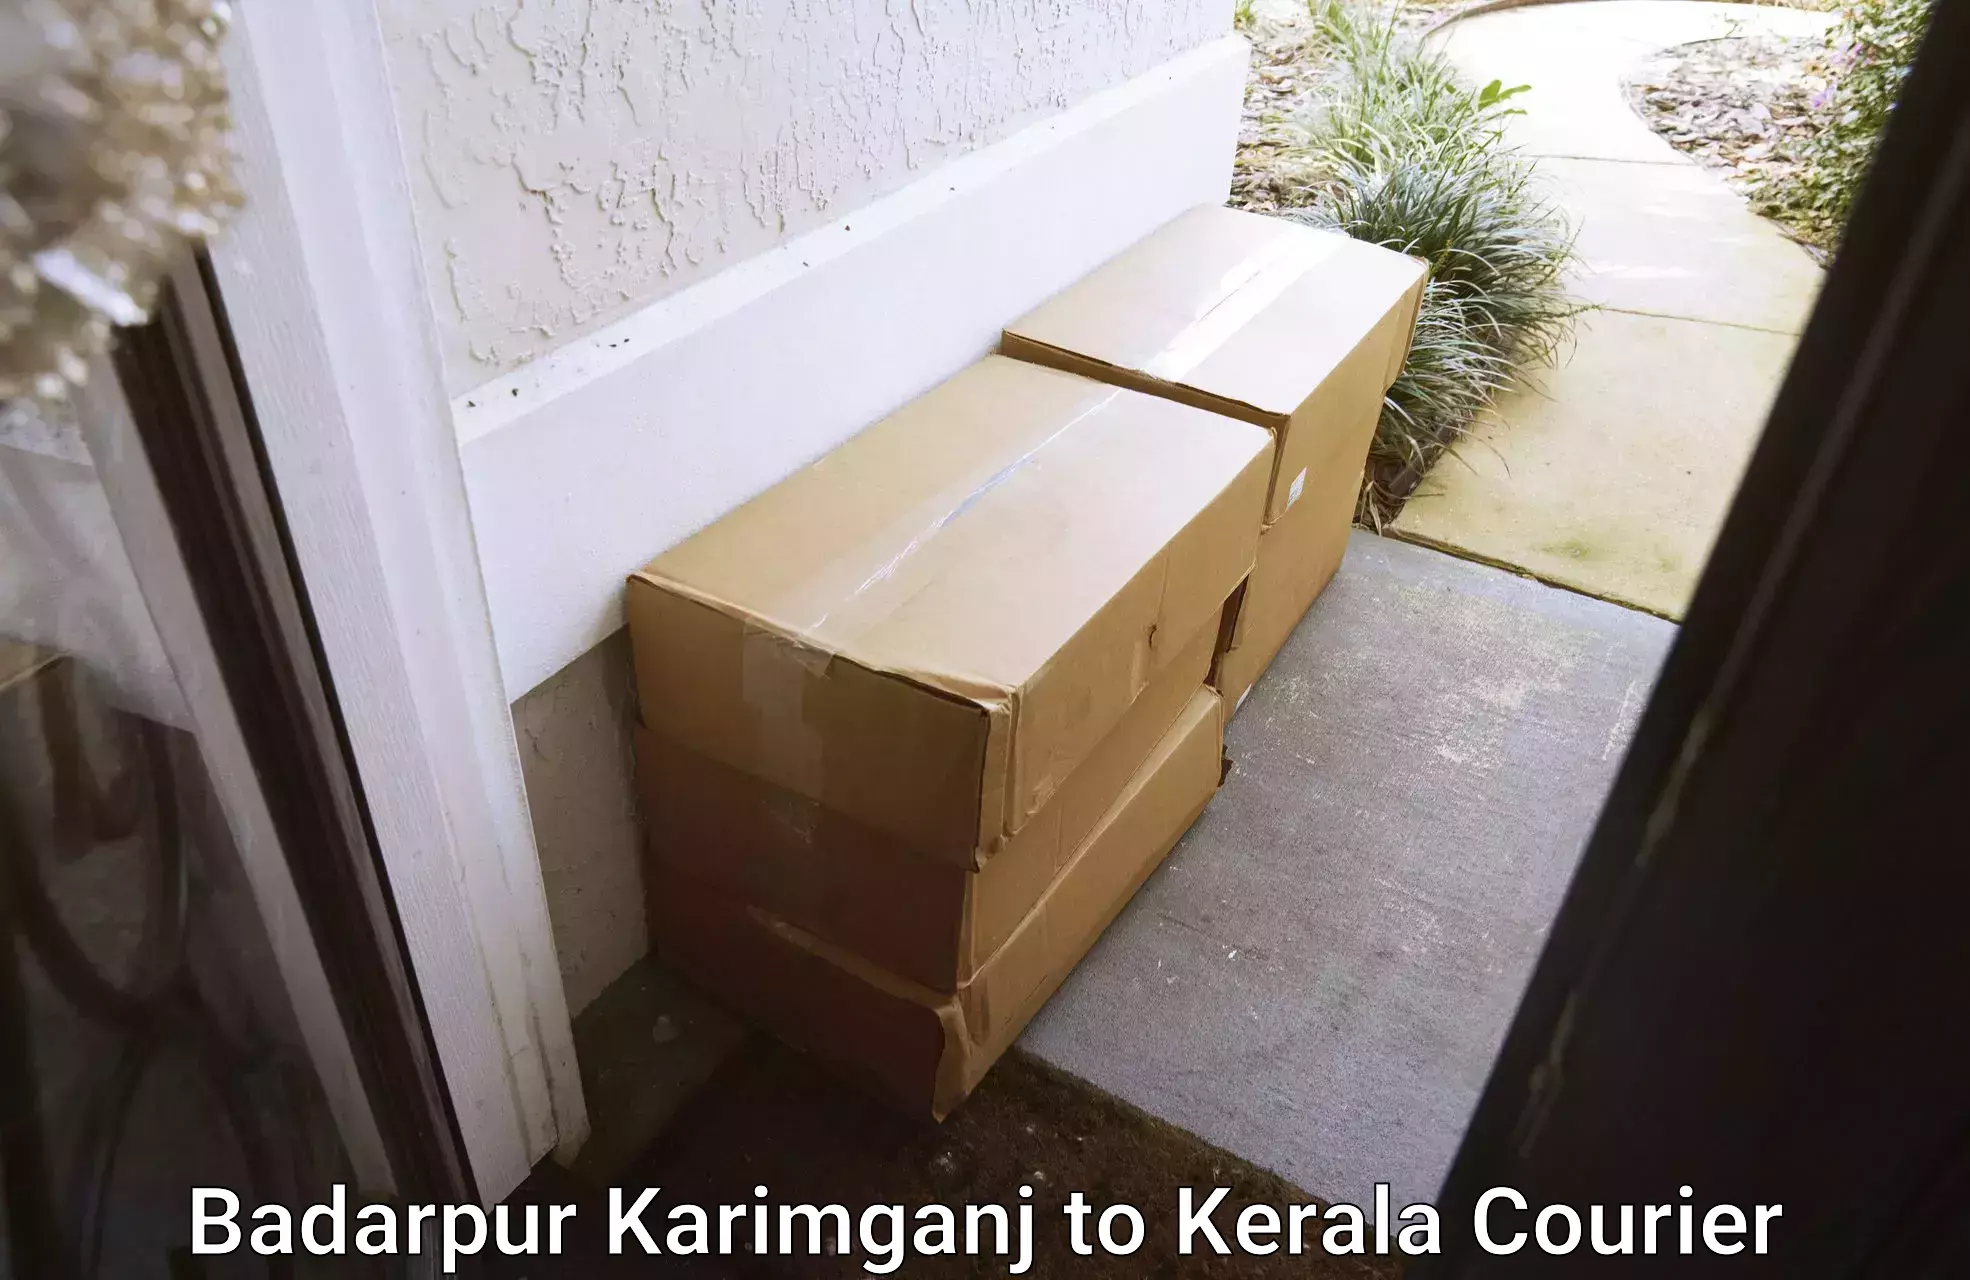 Express mail service Badarpur Karimganj to Cochin